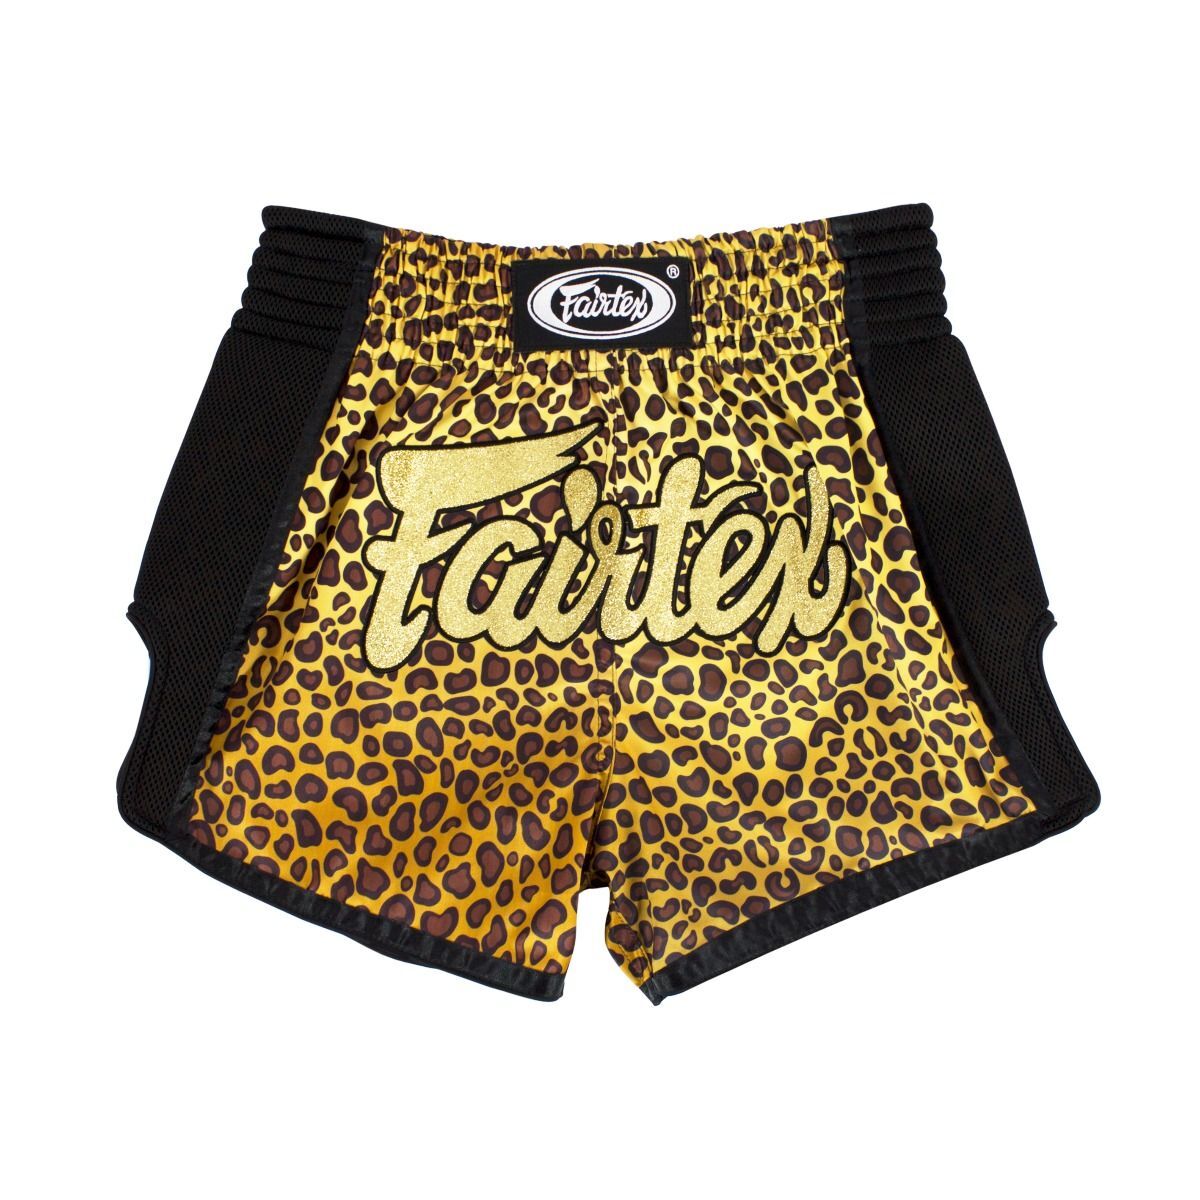 Board Shorts - Wild - Fairtex Official